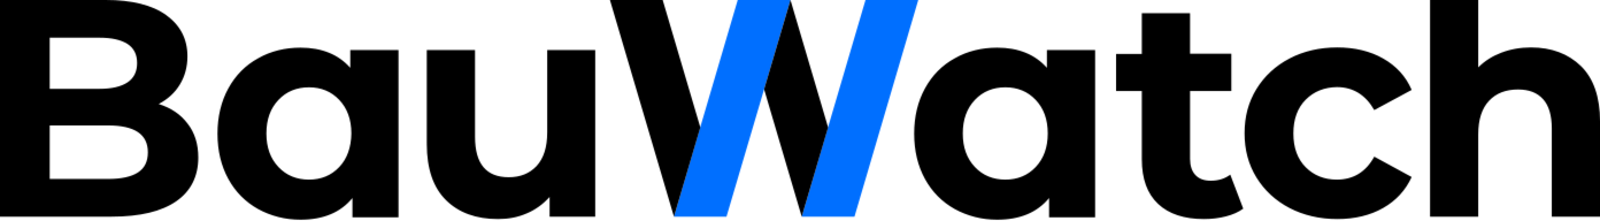 Logo de Bauwatch, société de travaux en Alarme domicile